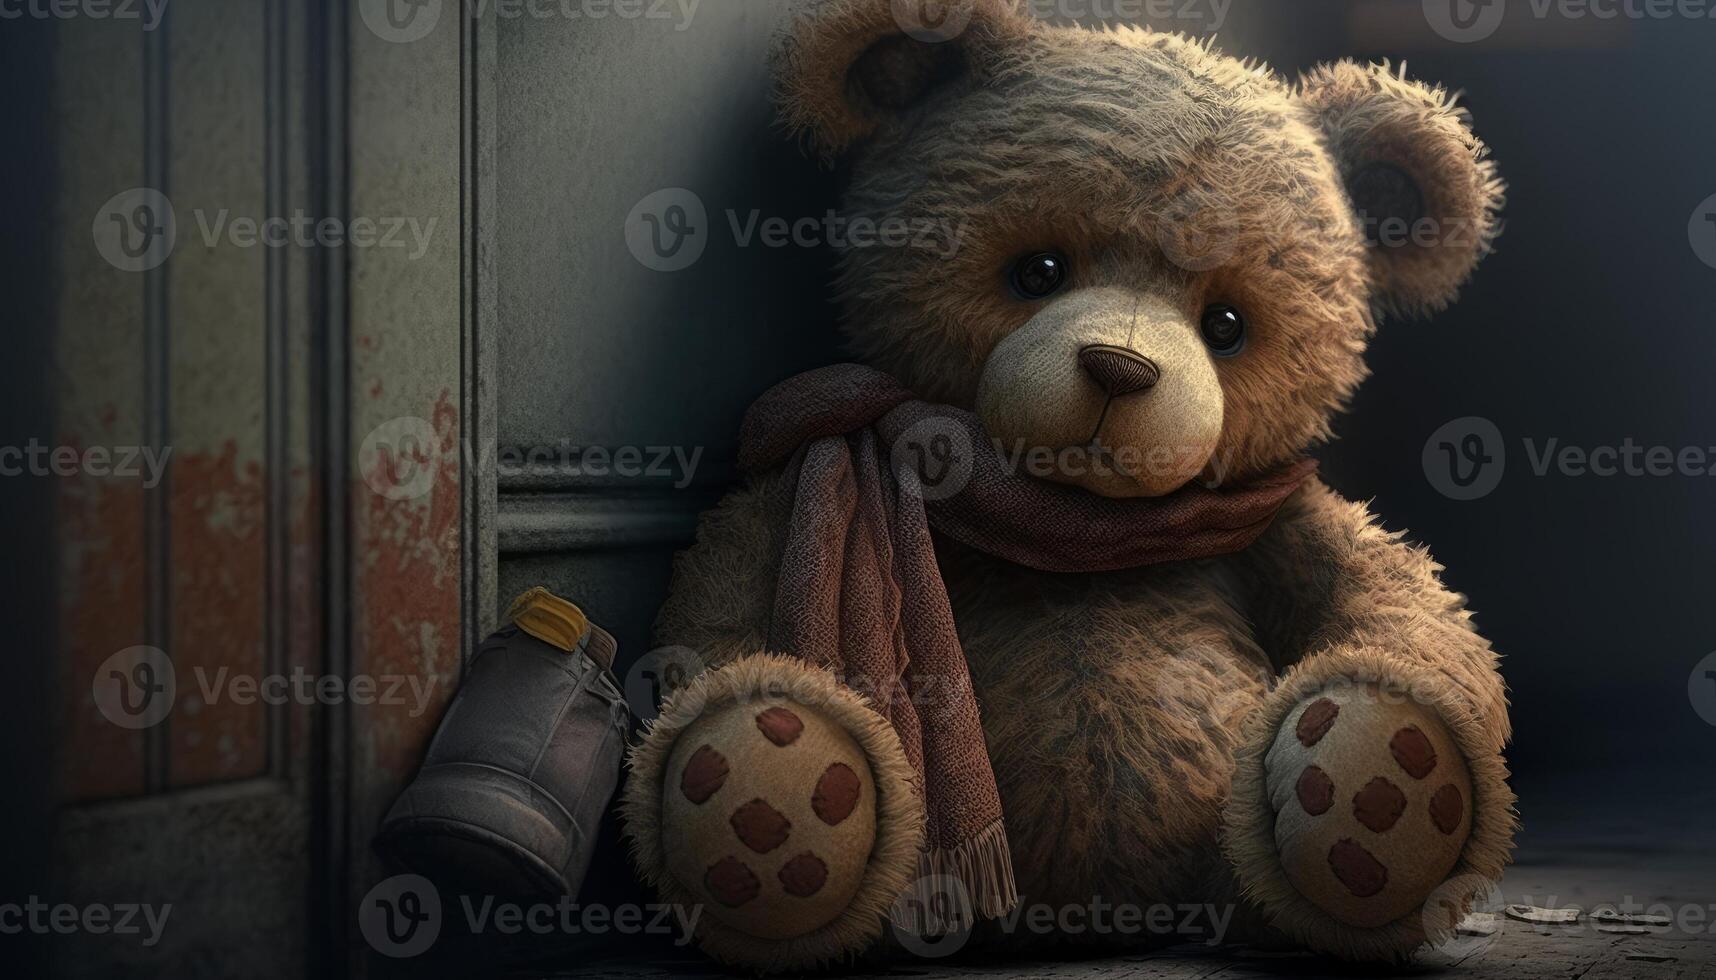 cutest teddy bear image photo